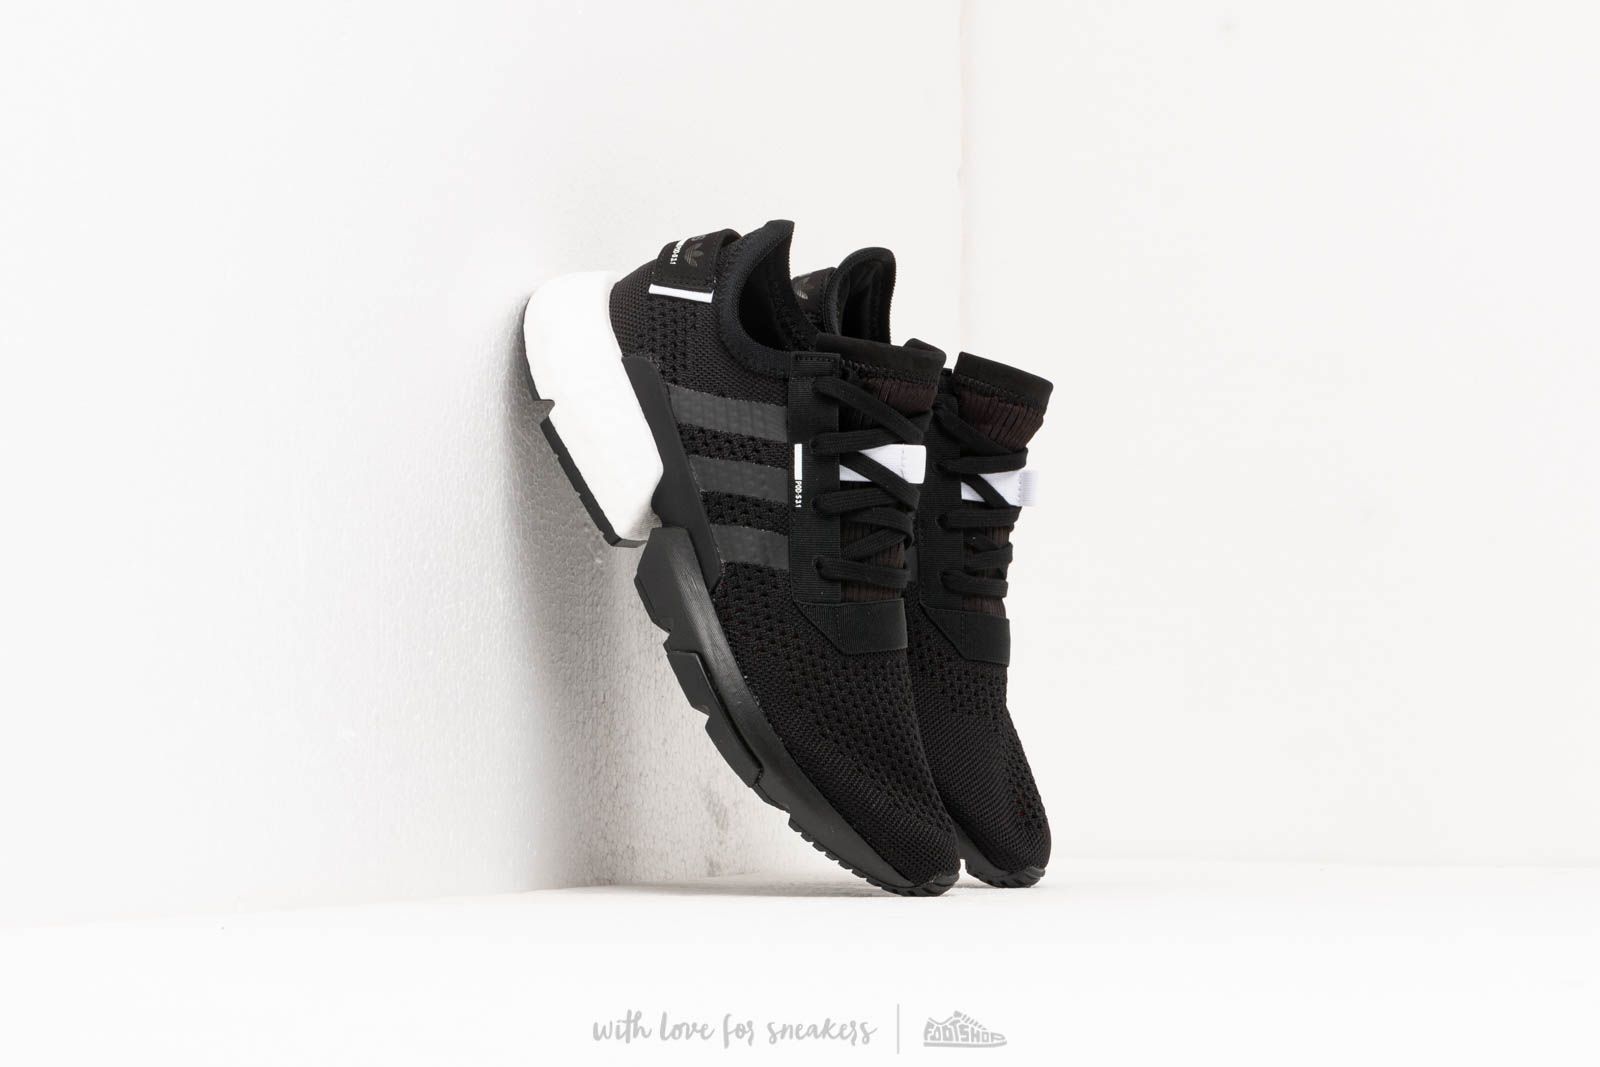 Chaussures et baskets homme adidas Pod-S3.1 Core Black/ Core Black/ Ftw White